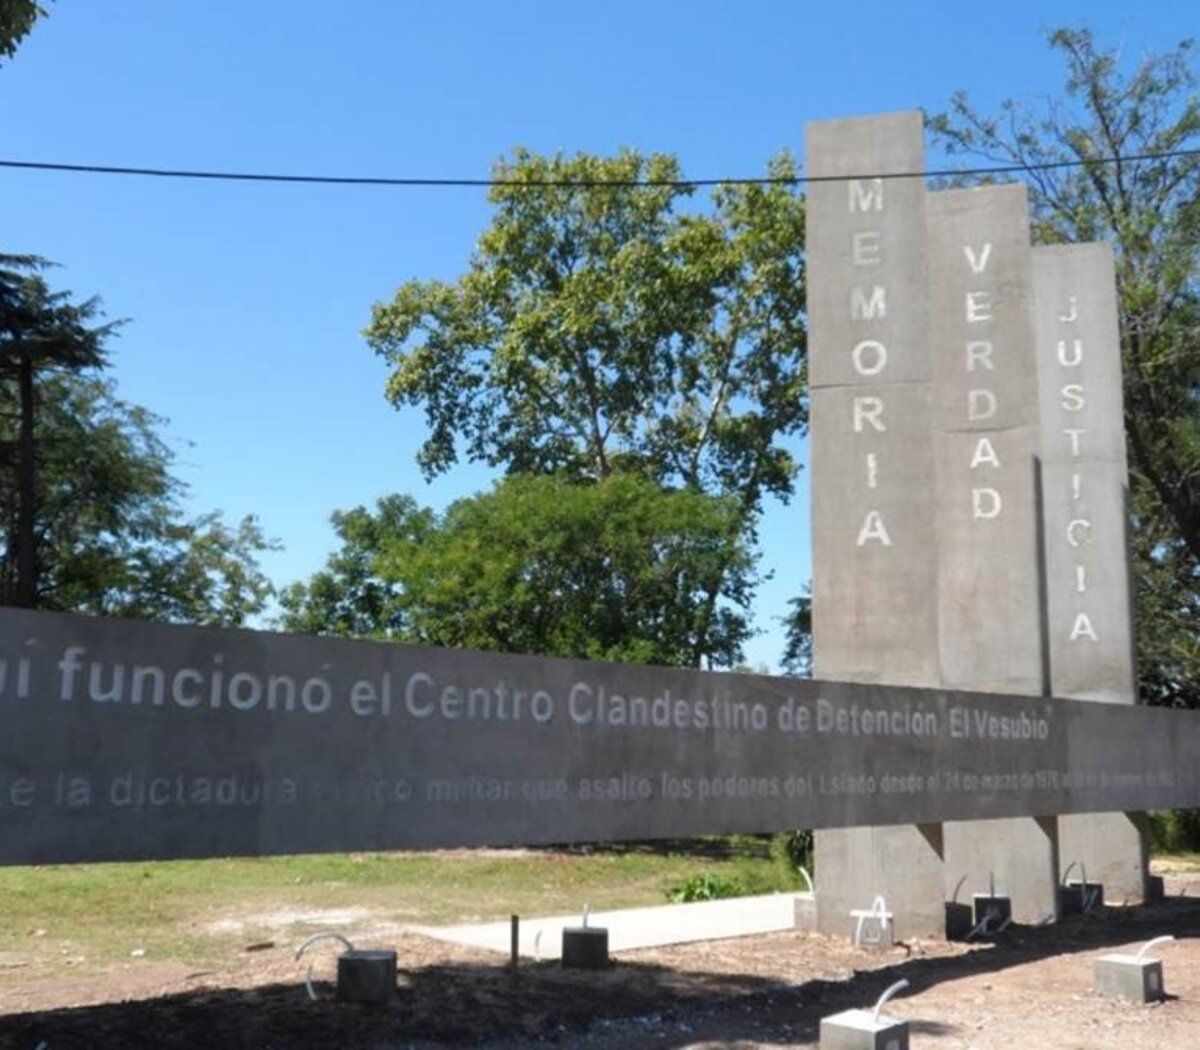 El Vesubio, la historia del centro clandestino de detención ubicado en La Matanza